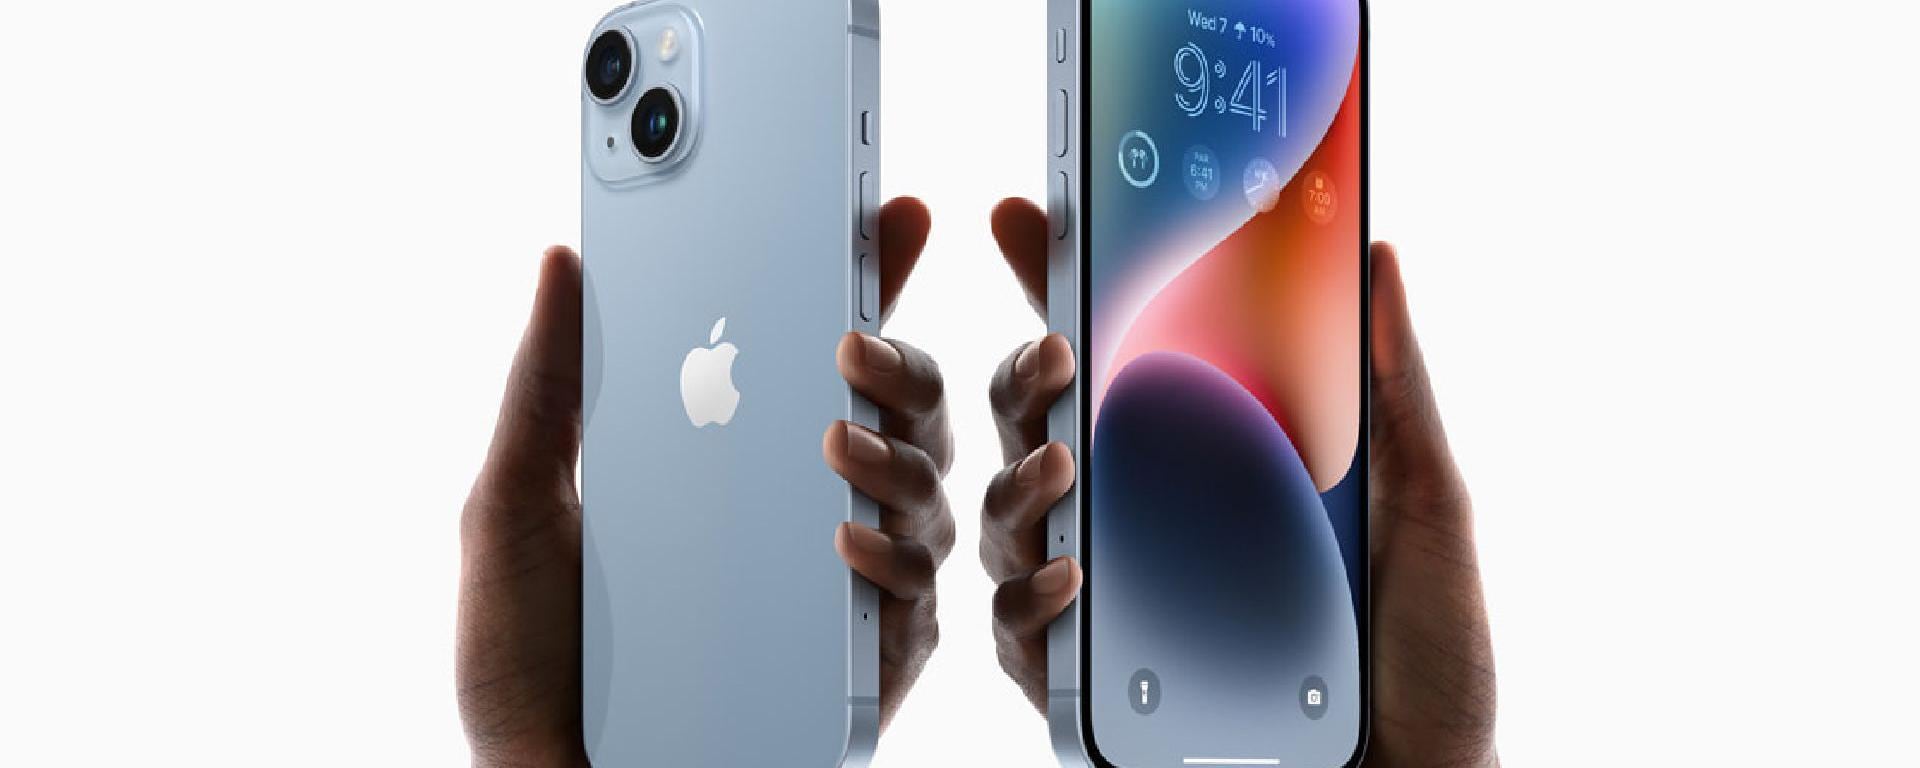 iPhone 11 Pro o Pro Max: ¿cuál merece más la pena?